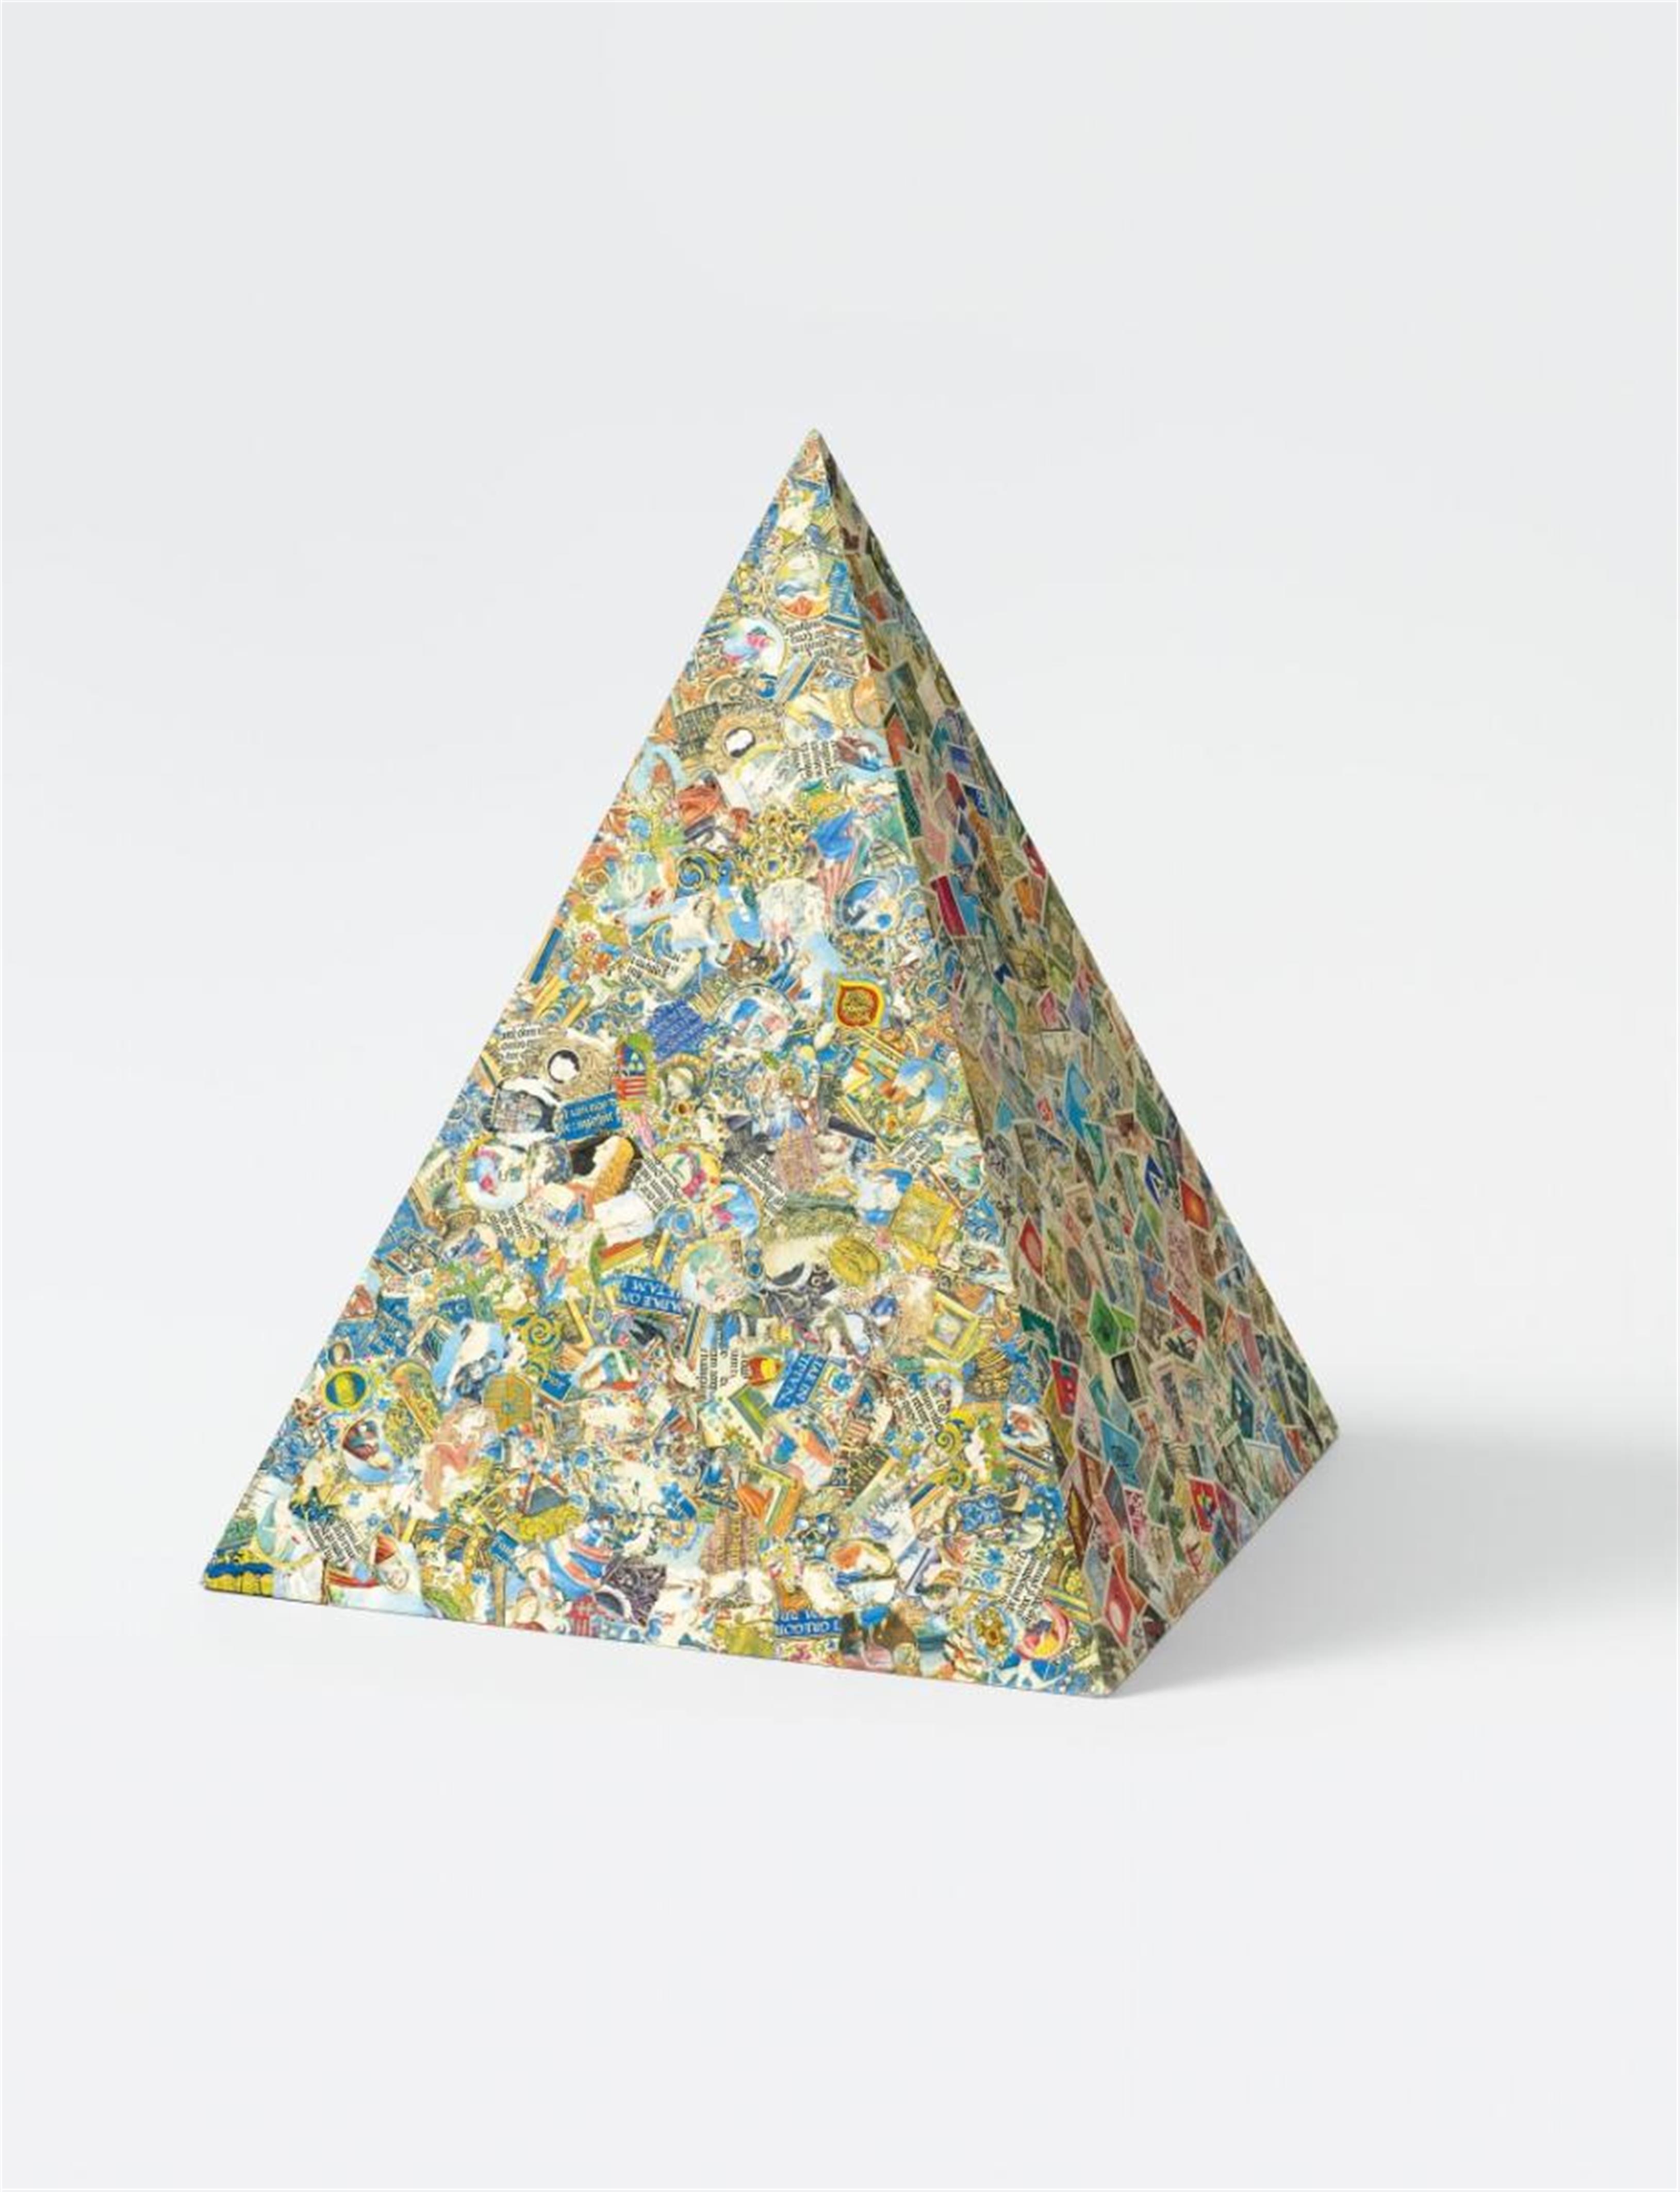 Jirí Kolár - Untitled (pyramid) - image-1